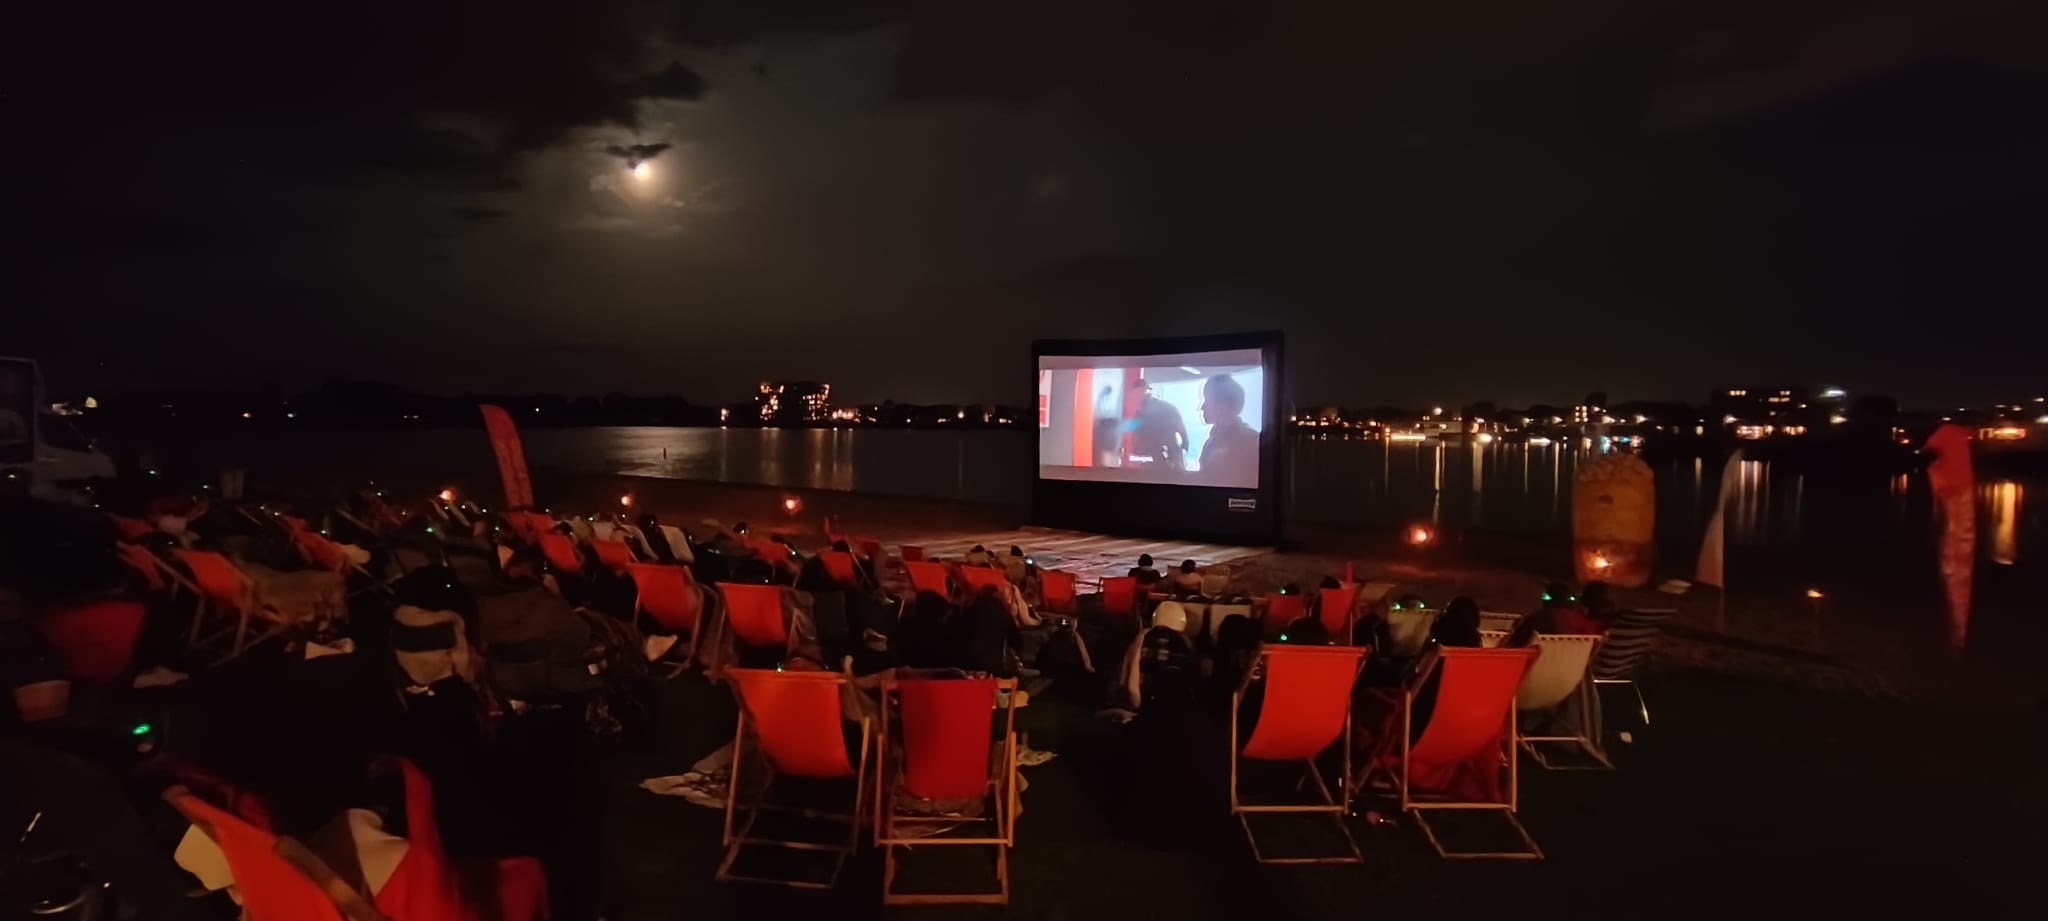 Cinema at the beach - Sup & Surf nijmegen